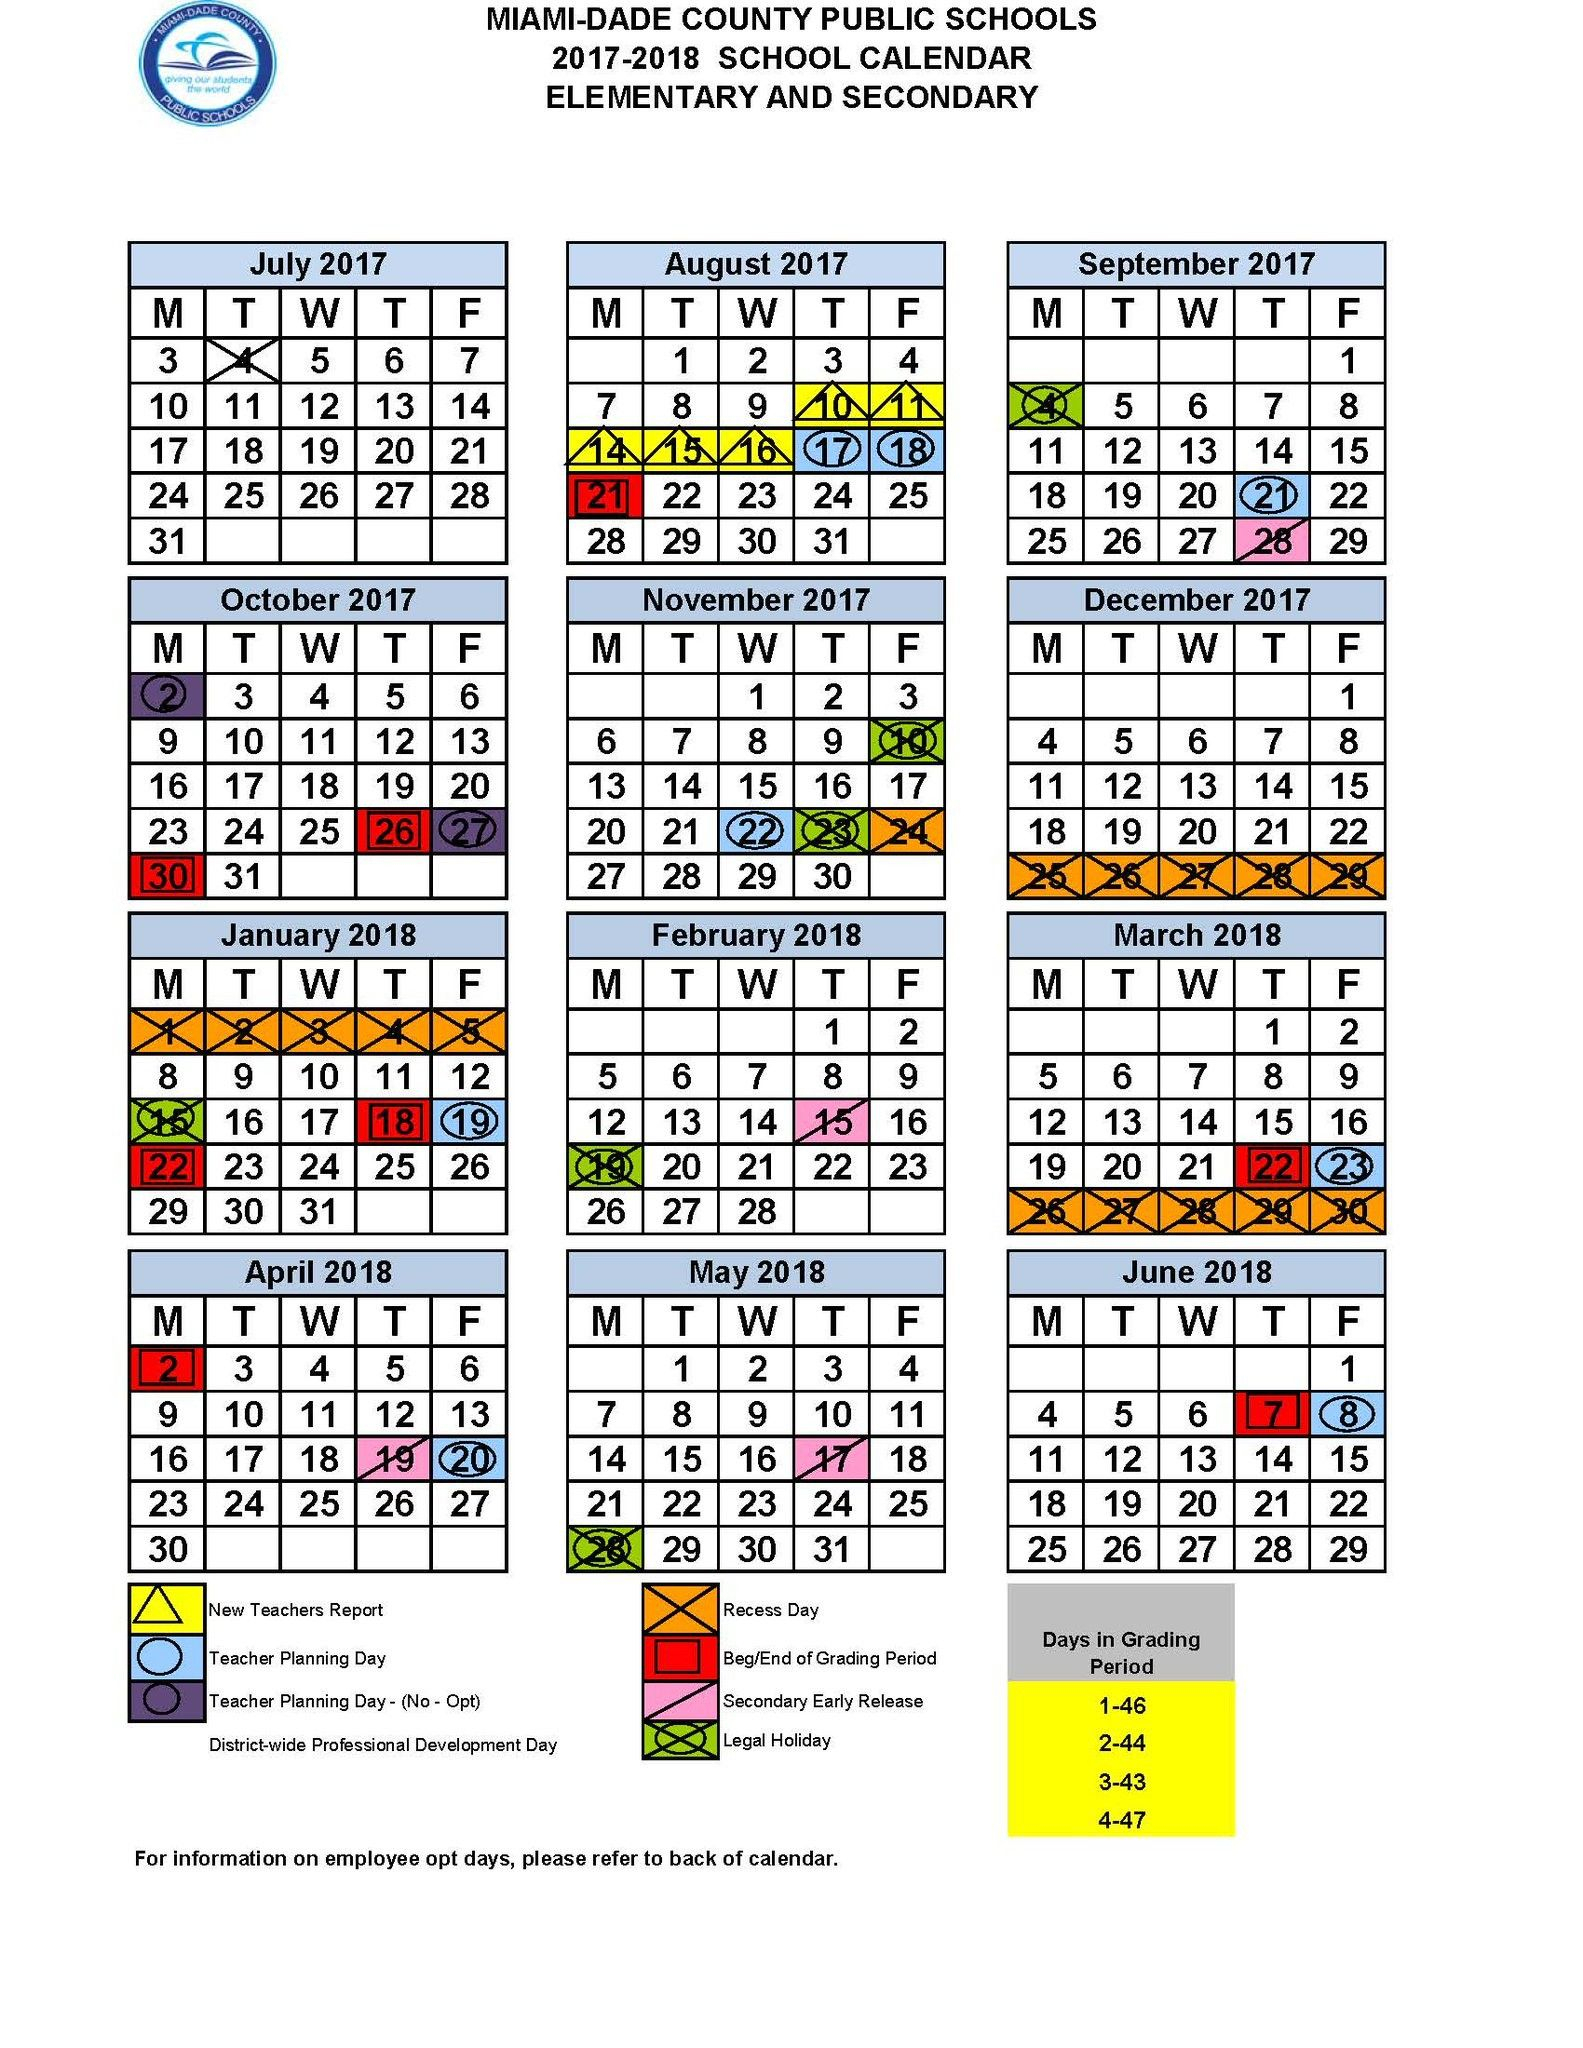 dade-county-public-schools-calendar-tt9n